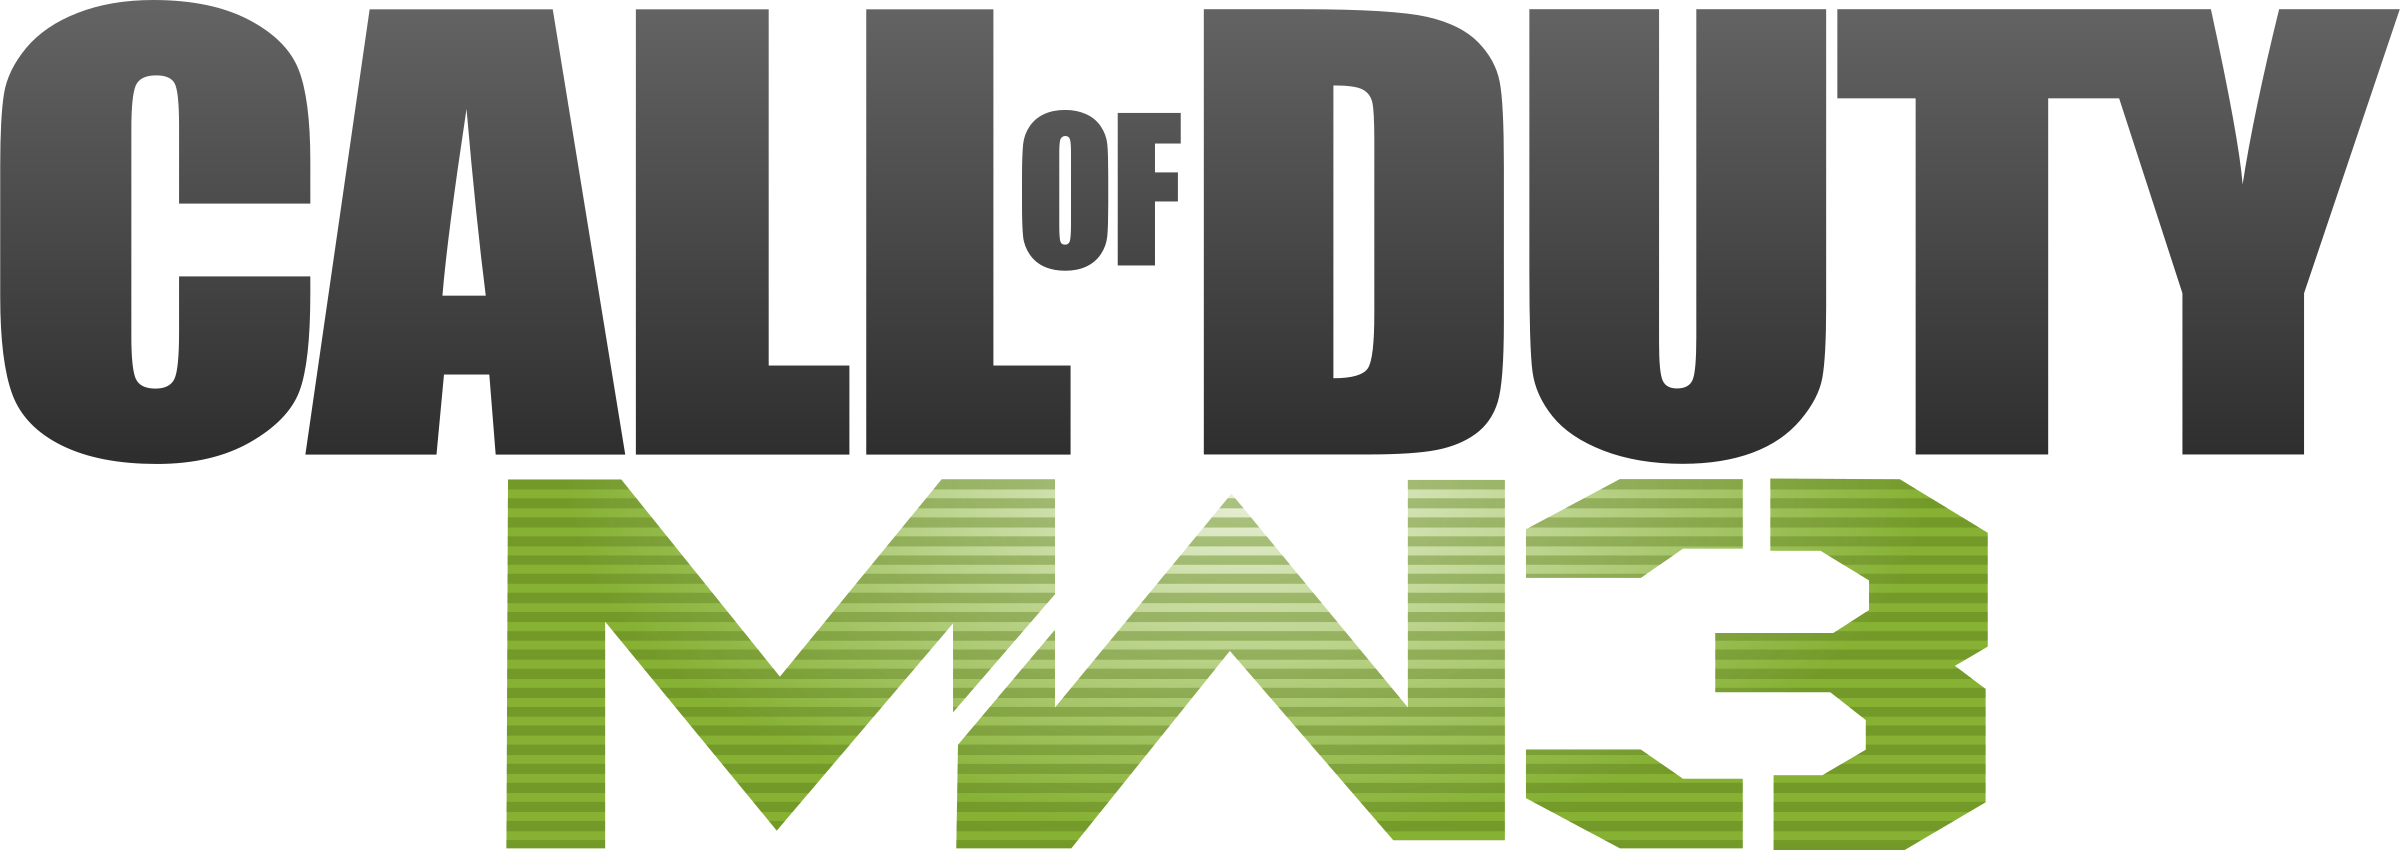 Logotipo de Warfare de Call of Duty PNG Clipart